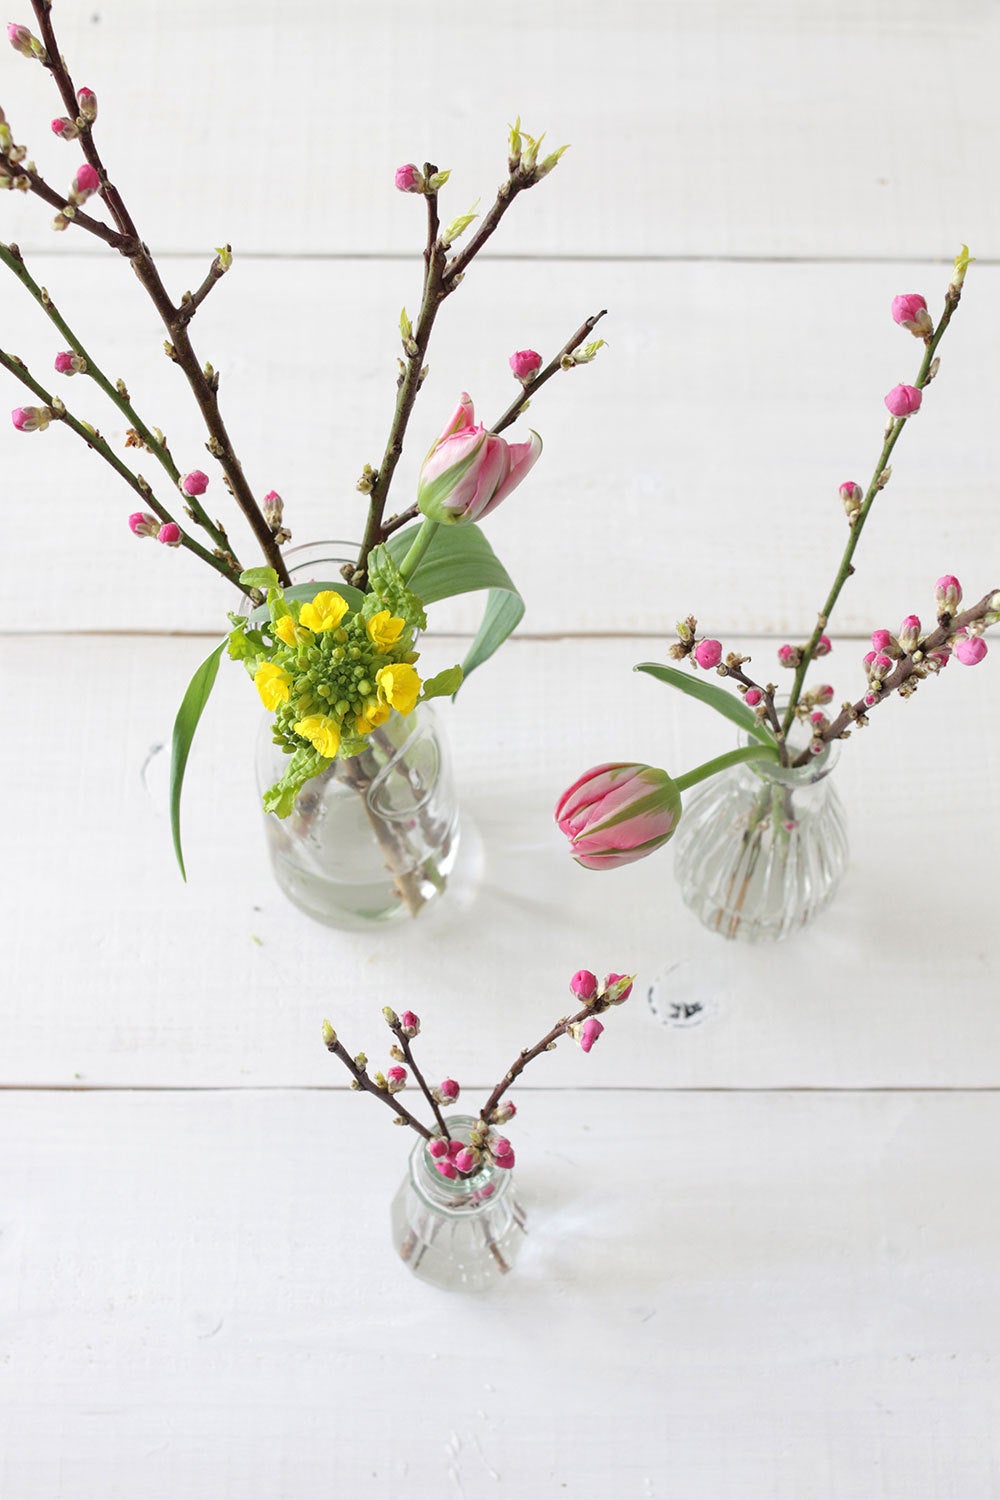 ひな祭りのお花 桃の花の枝は短くカット が扱いやすい Lifestyle Recipe 暮らしと心を整える ライフスタイルレシピ